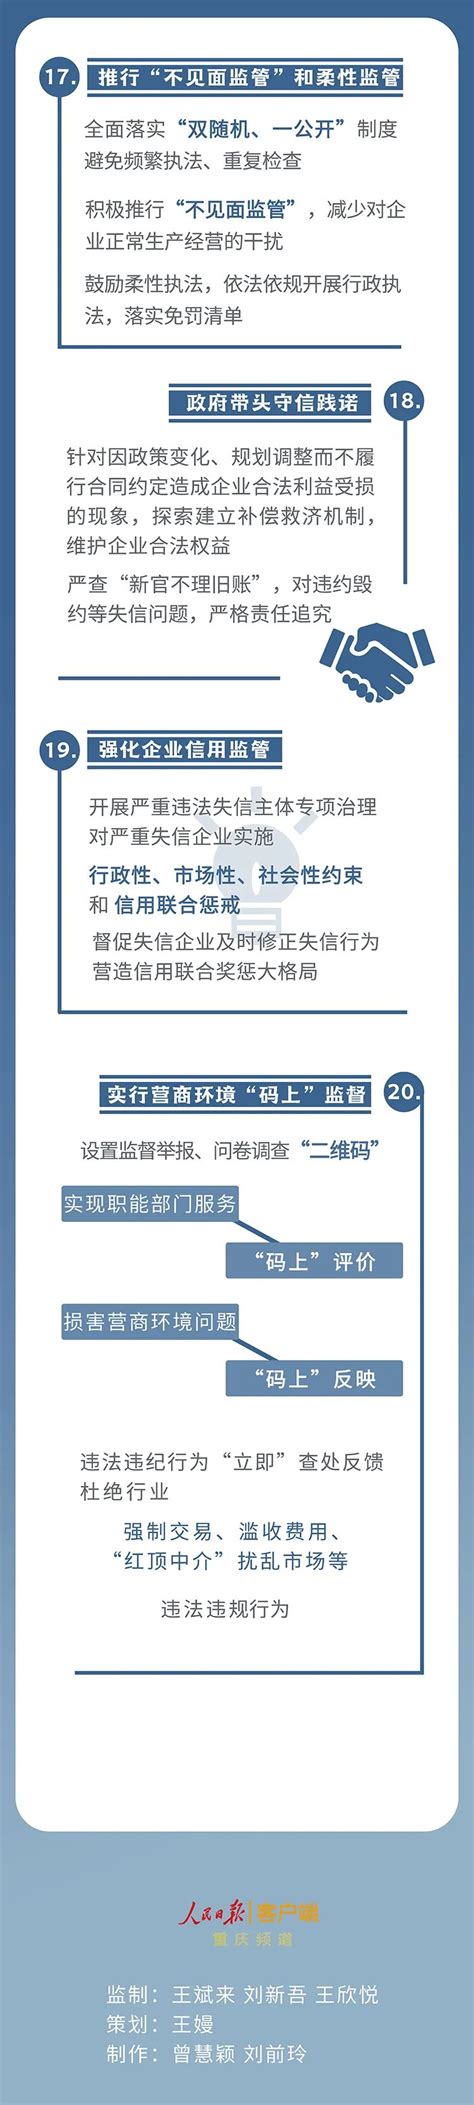 渝北市民服务中心投用 实现政务服务“一窗综办”_重庆市人民政府网